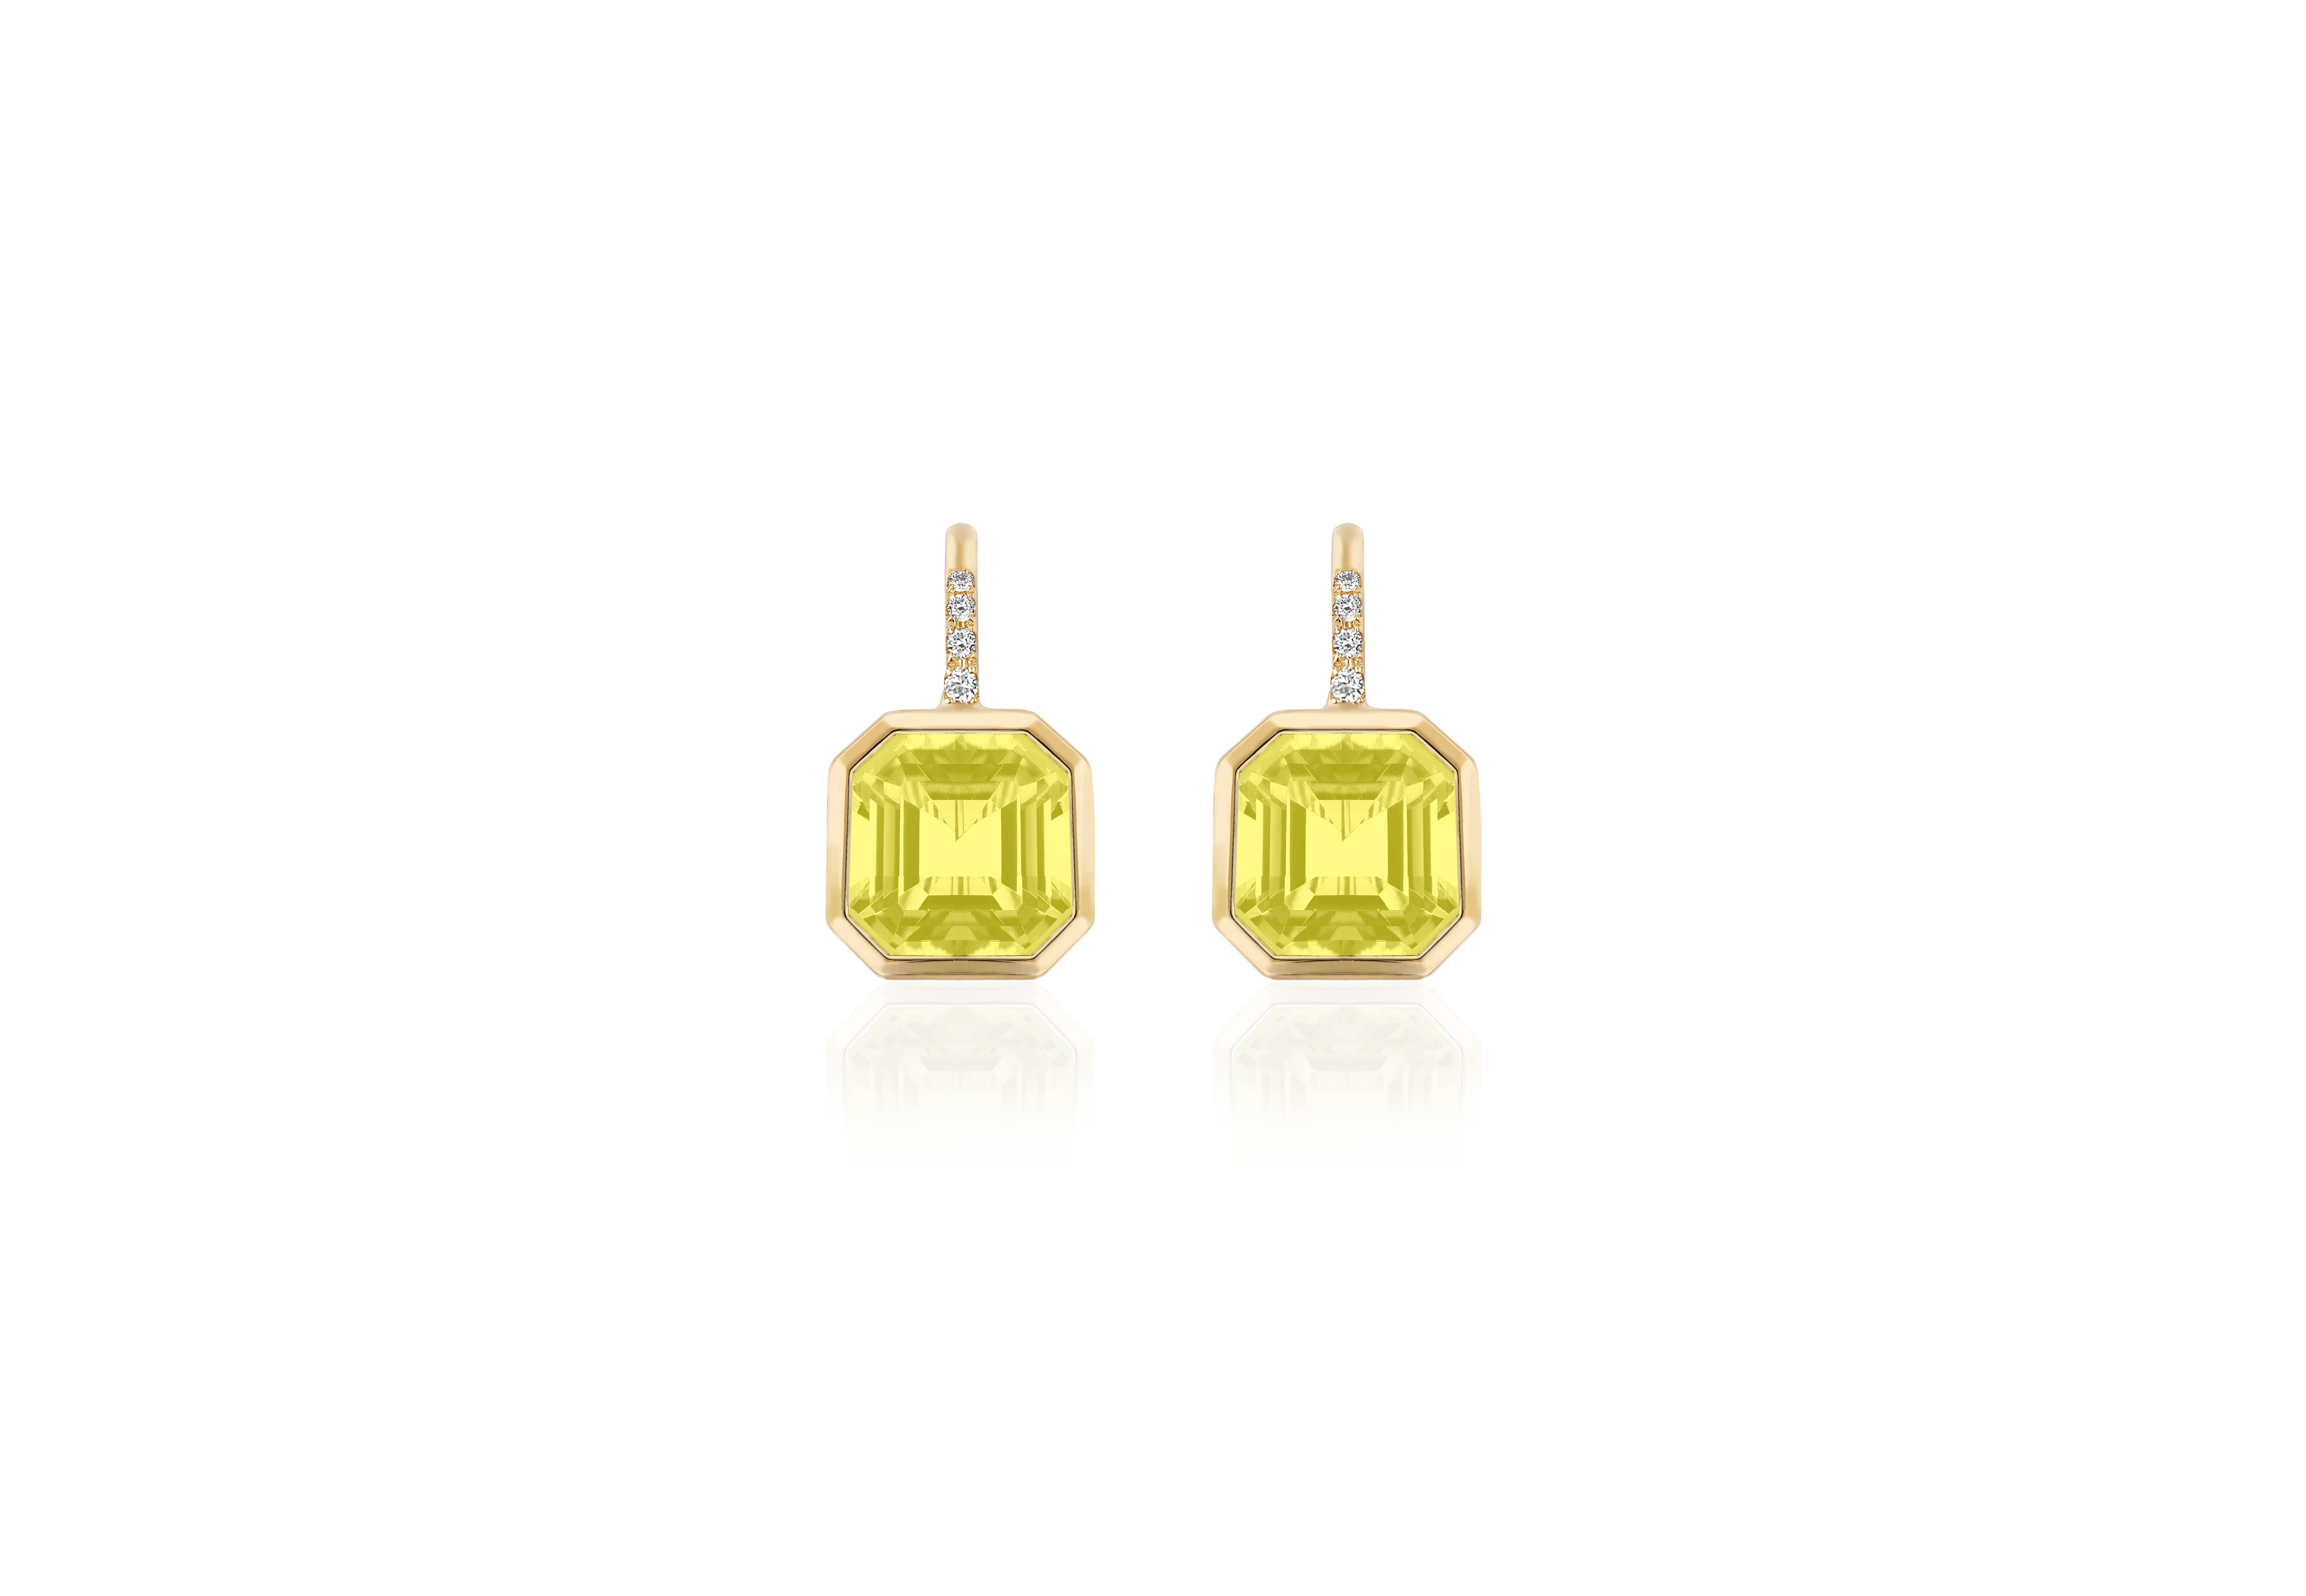 Rehaussez votre style avec ces boucles d'oreilles exquises ornées d'une superbe pierre précieuse en quartz citron taillé en Asscher de 9 x 9 mm. Montées sur un délicat fil d'or 18 carats, ces boucles d'oreilles sont ornées de quatre diamants